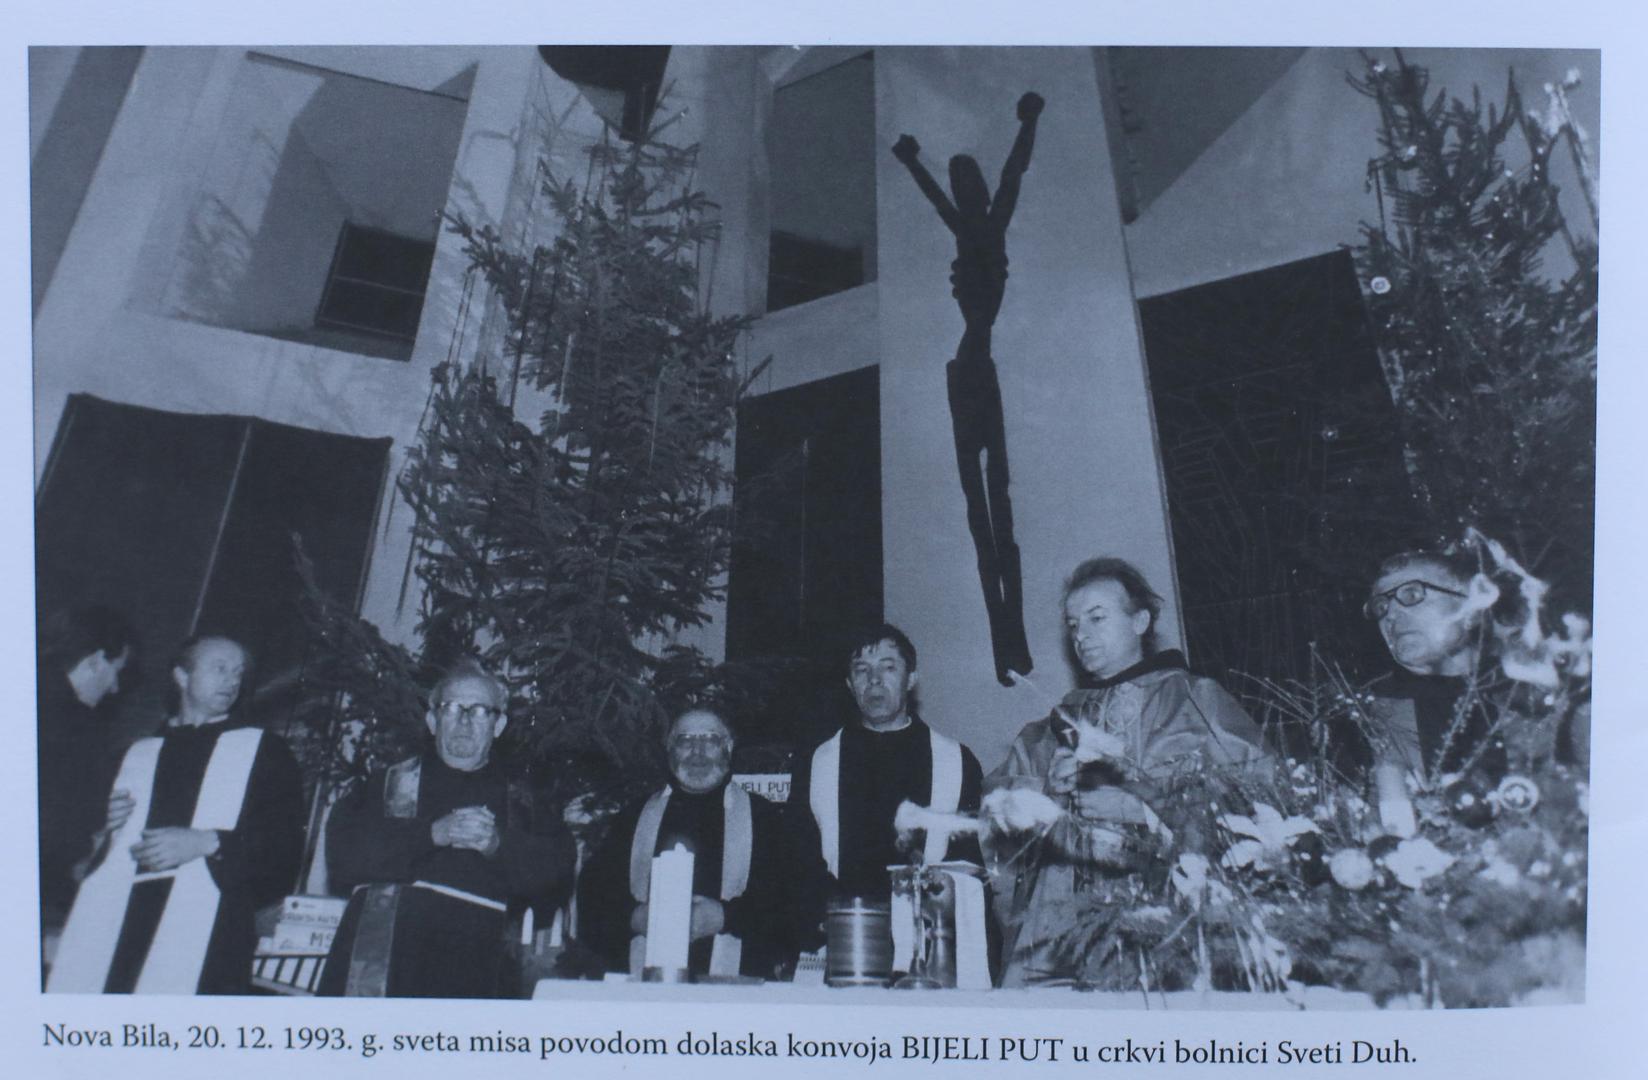 U crkvi Svetog Duha služena je u povodu dolaska konvoja 20. prosinca 1993.

